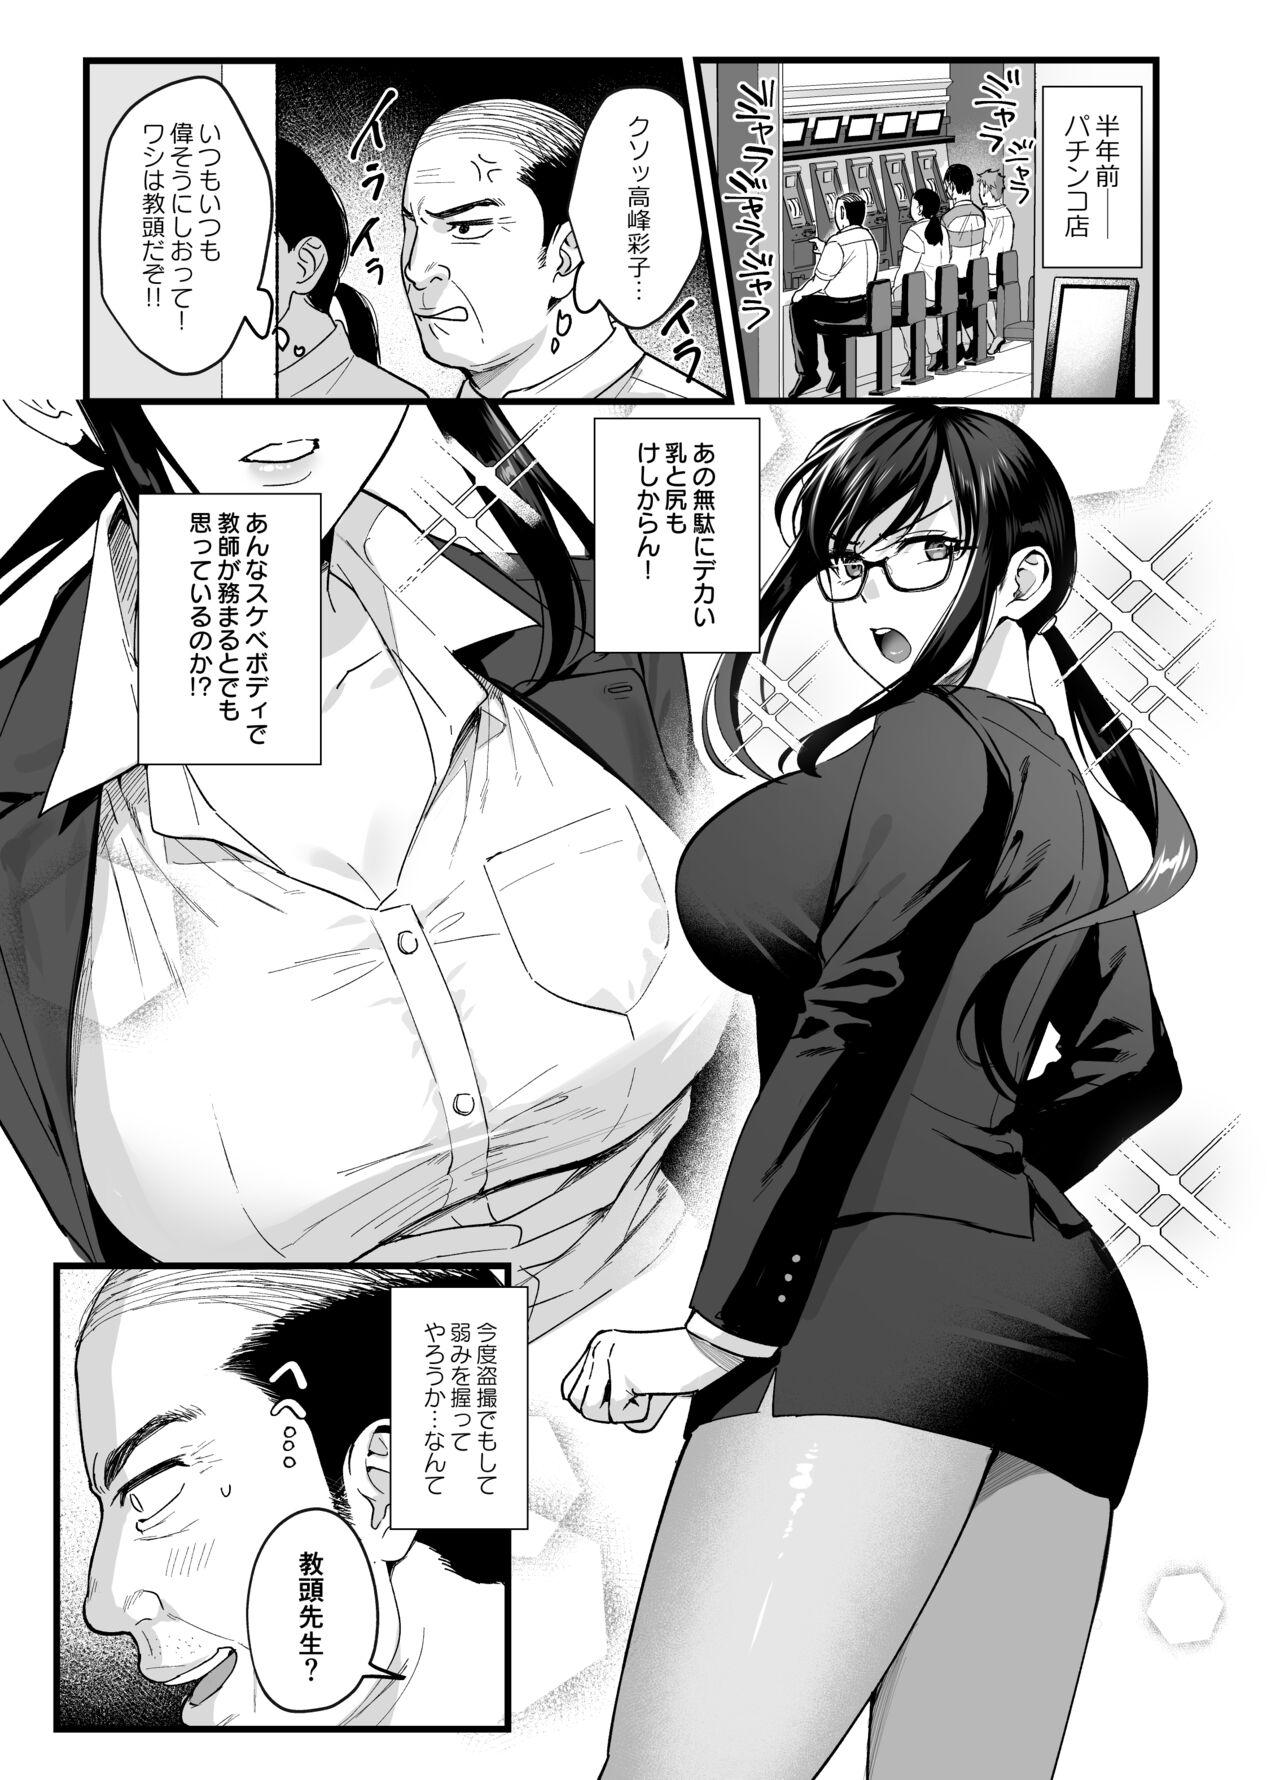 Perverted Toshoshitsu no Kanojo 6 - Original Sluts - Page 2